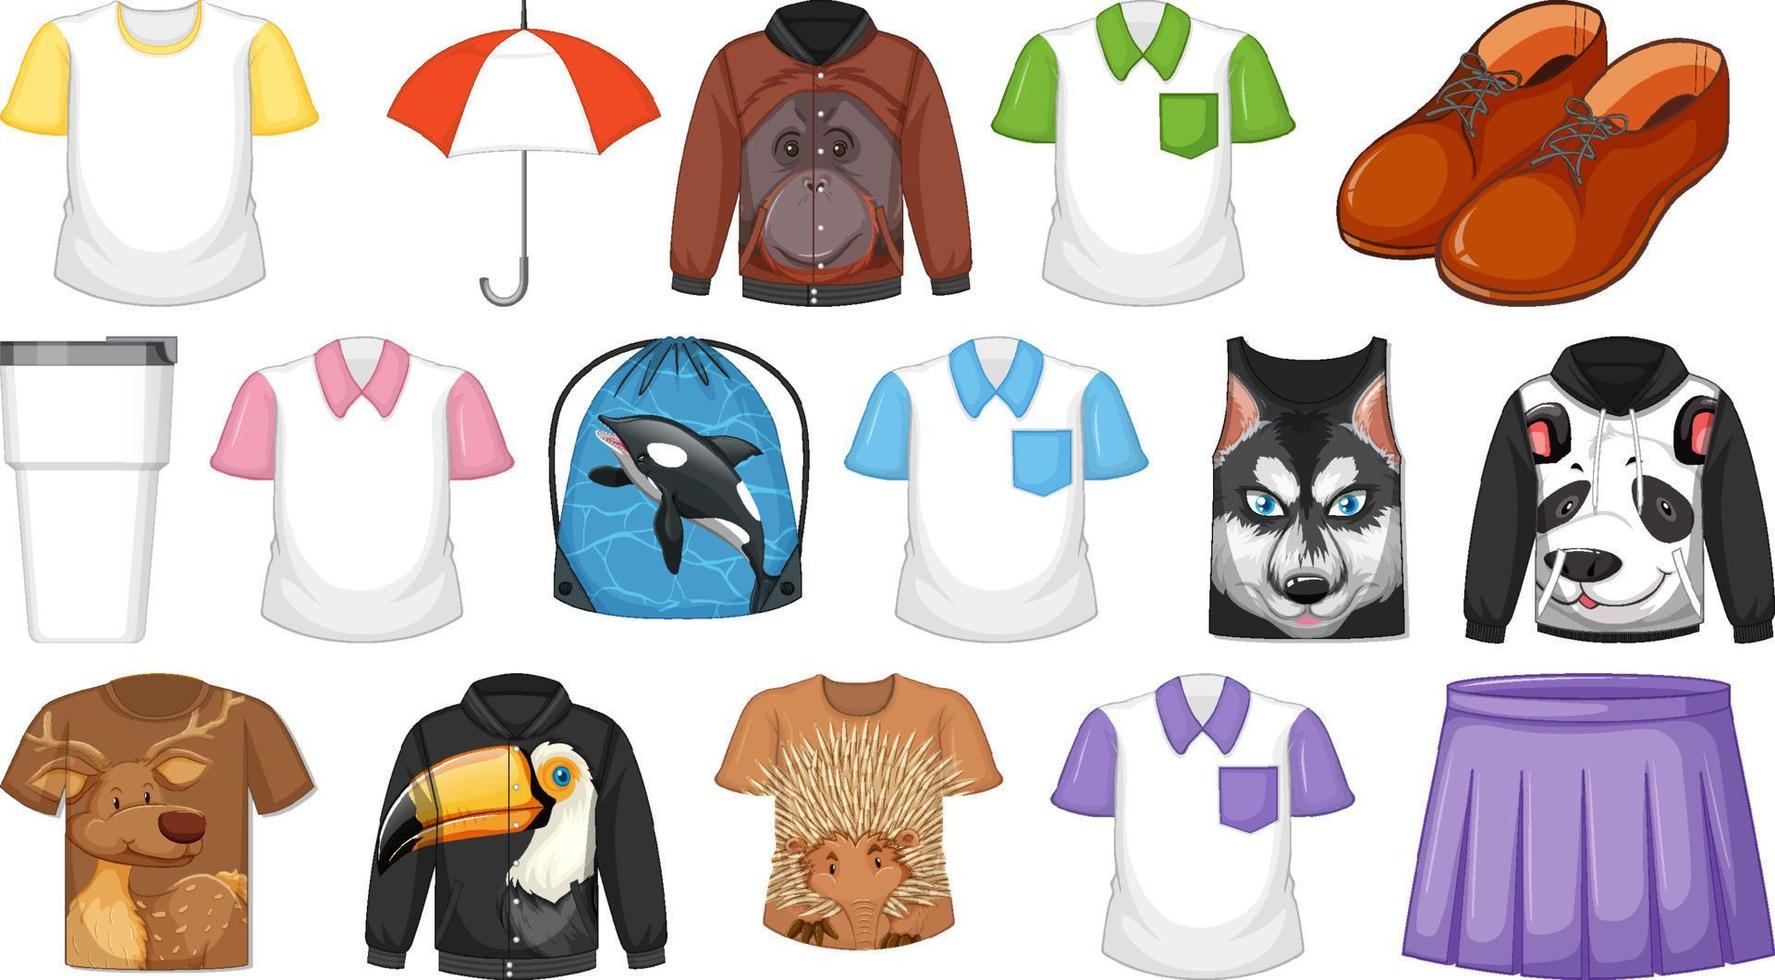 conjunto de diferentes camisetas y accesorios con estampados de animales. vector